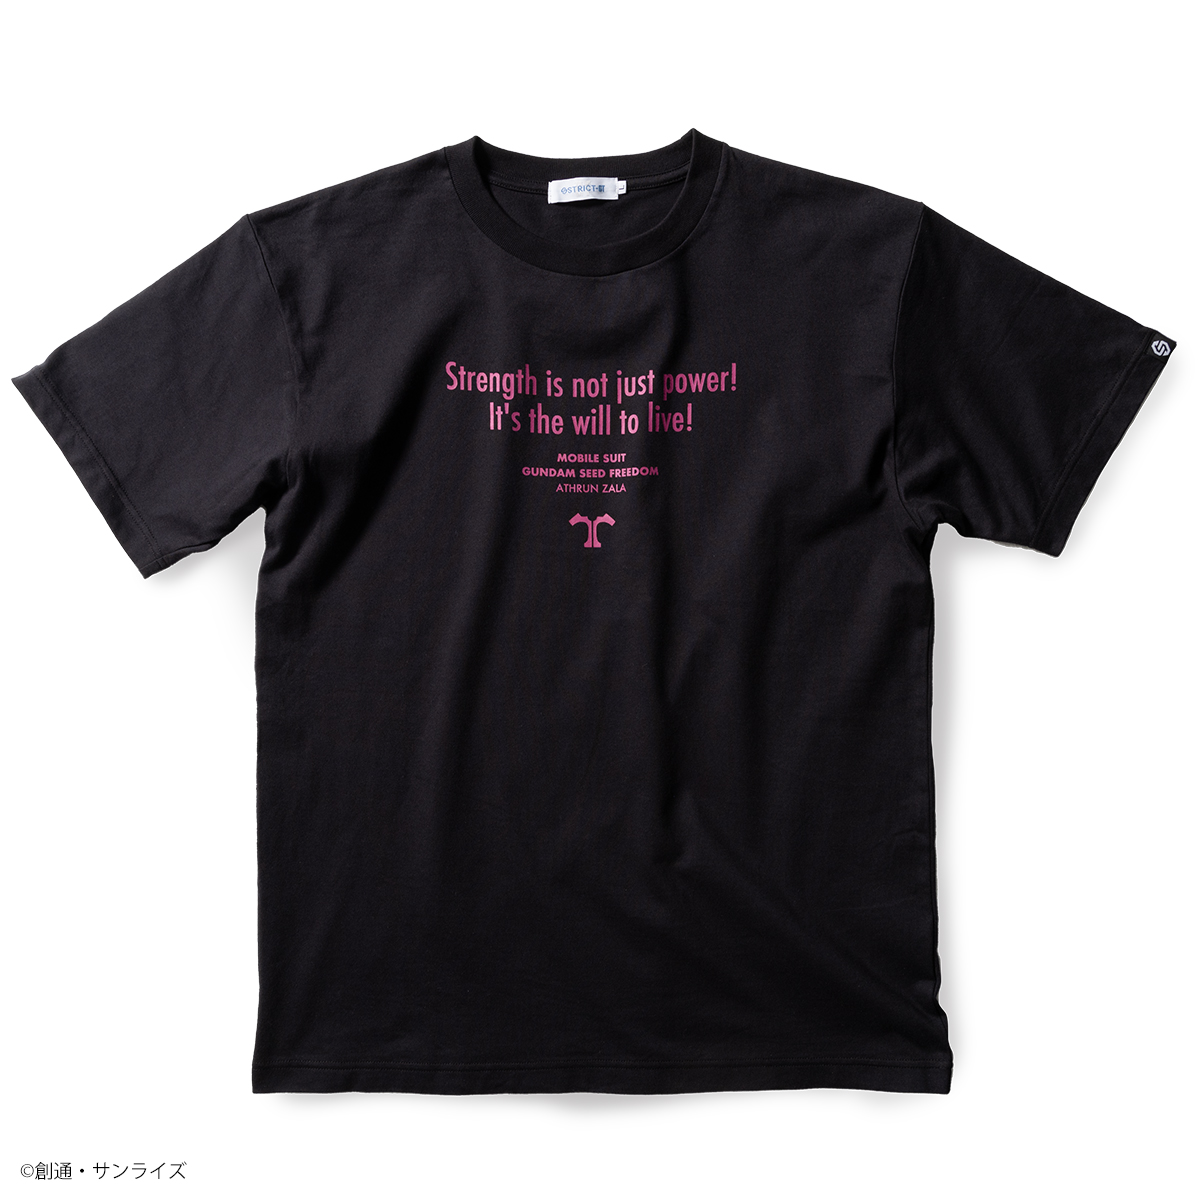 『機動戦士ガンダムSEED FREEDOM』よりFamous Lines第4弾となる劇中の名セリフデザインの新作Tシャツが登場!